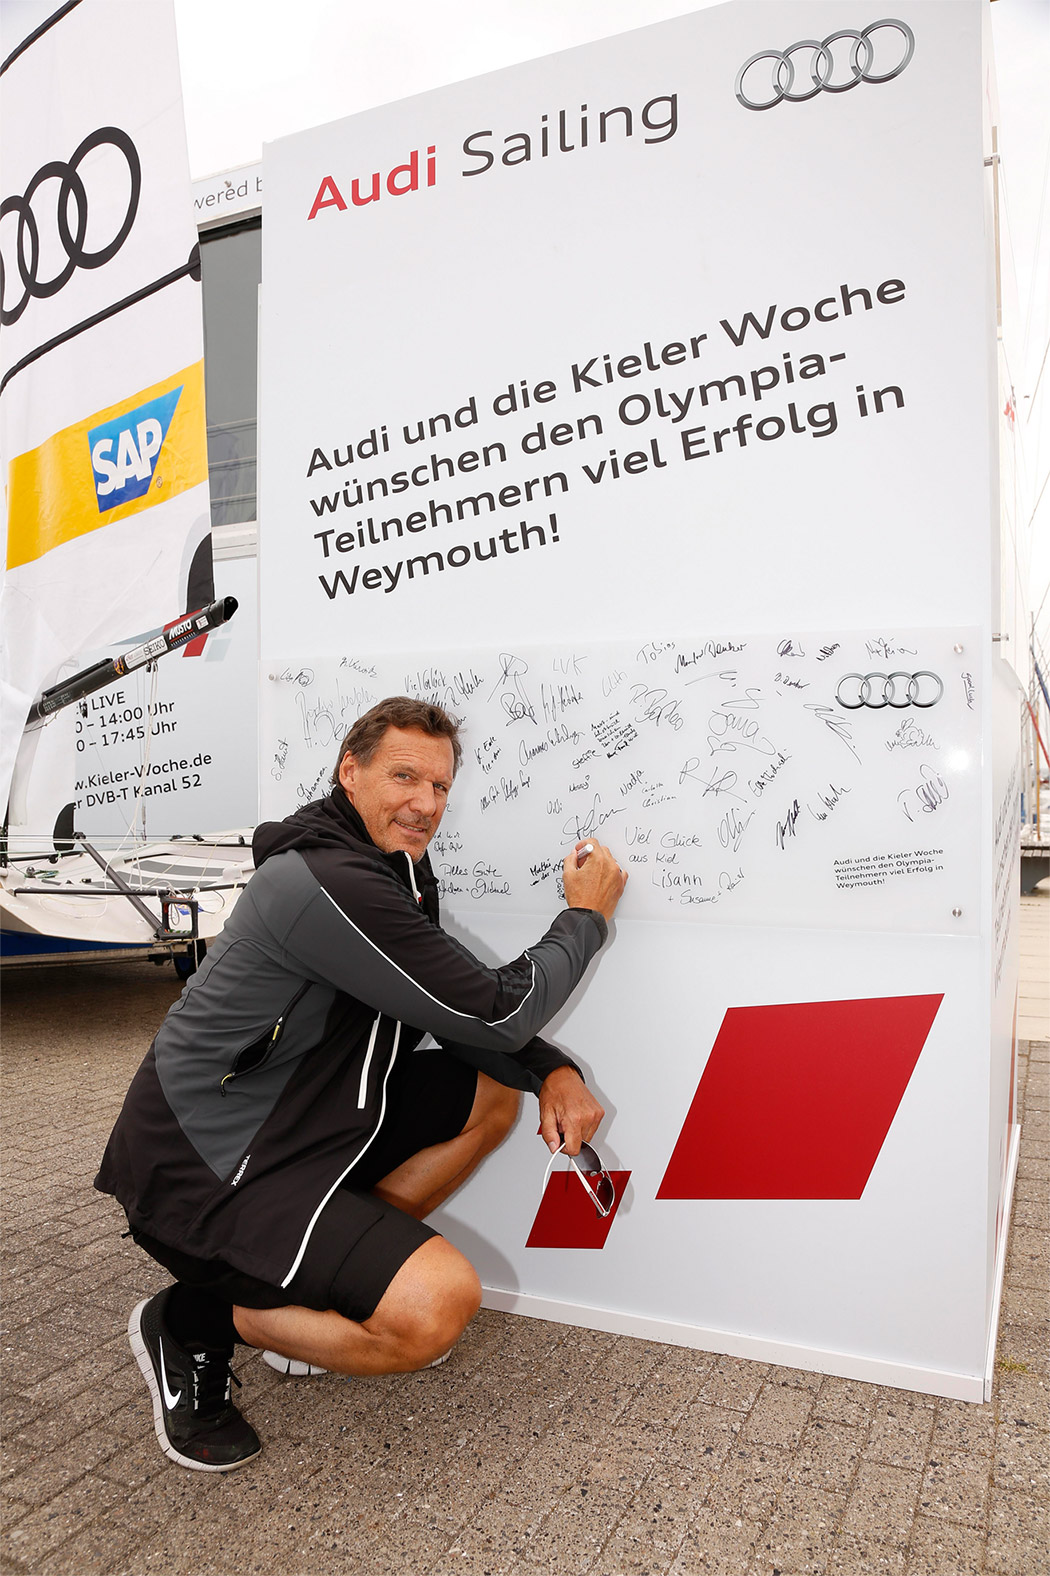 Ralf Möller - Testimonial Audi Sailing 